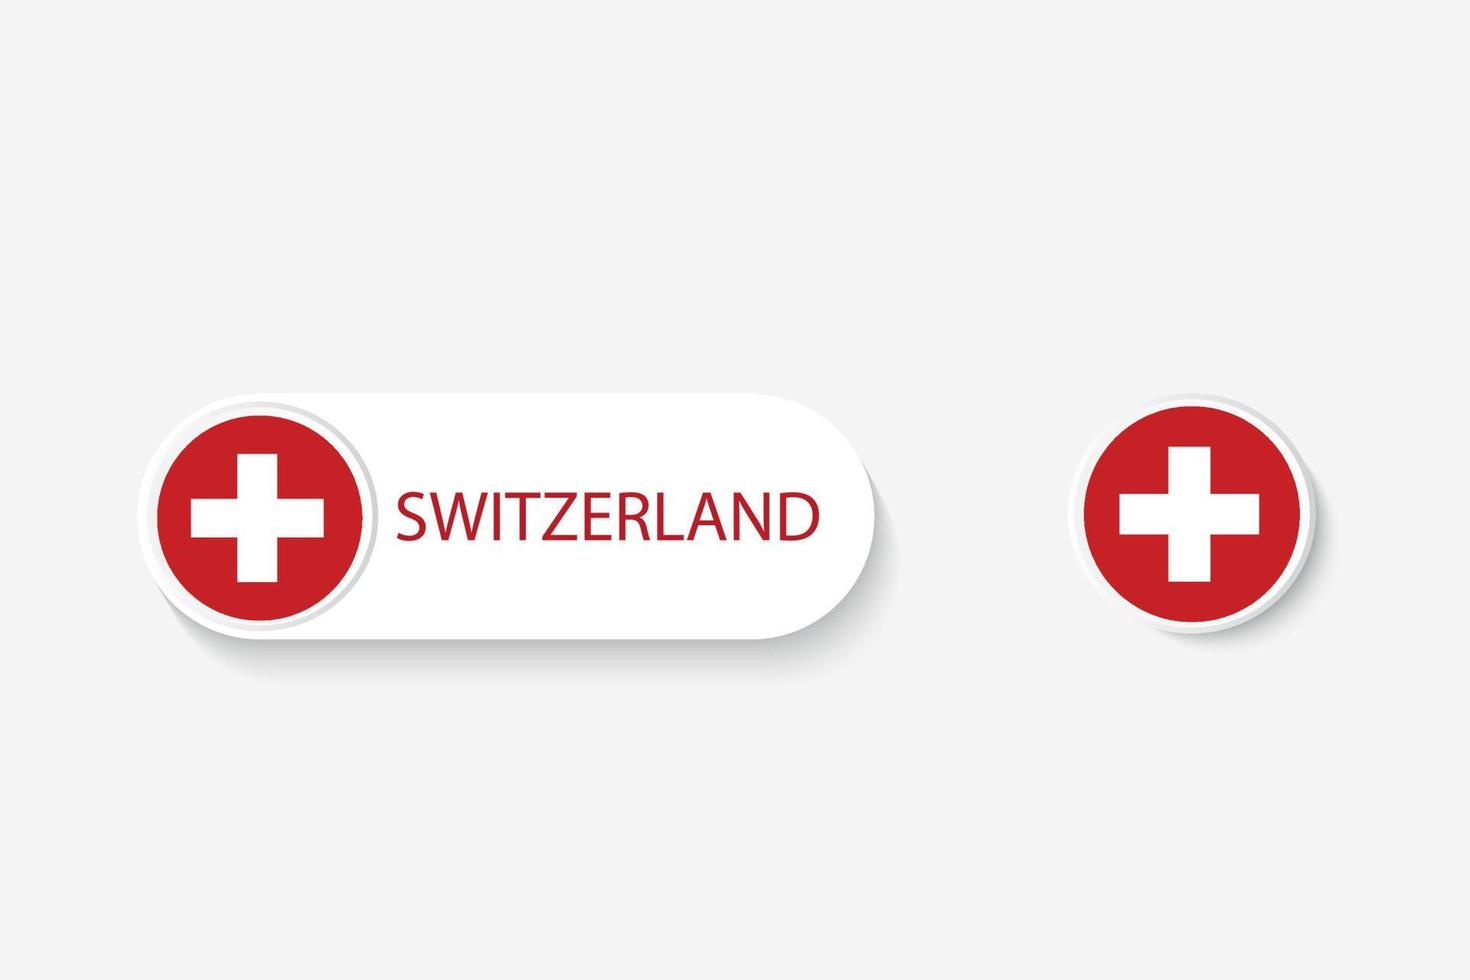 bandiera del pulsante della svizzera nell'illustrazione di forma ovale con la parola della svizzera. e pulsante bandiera svizzera. vettore